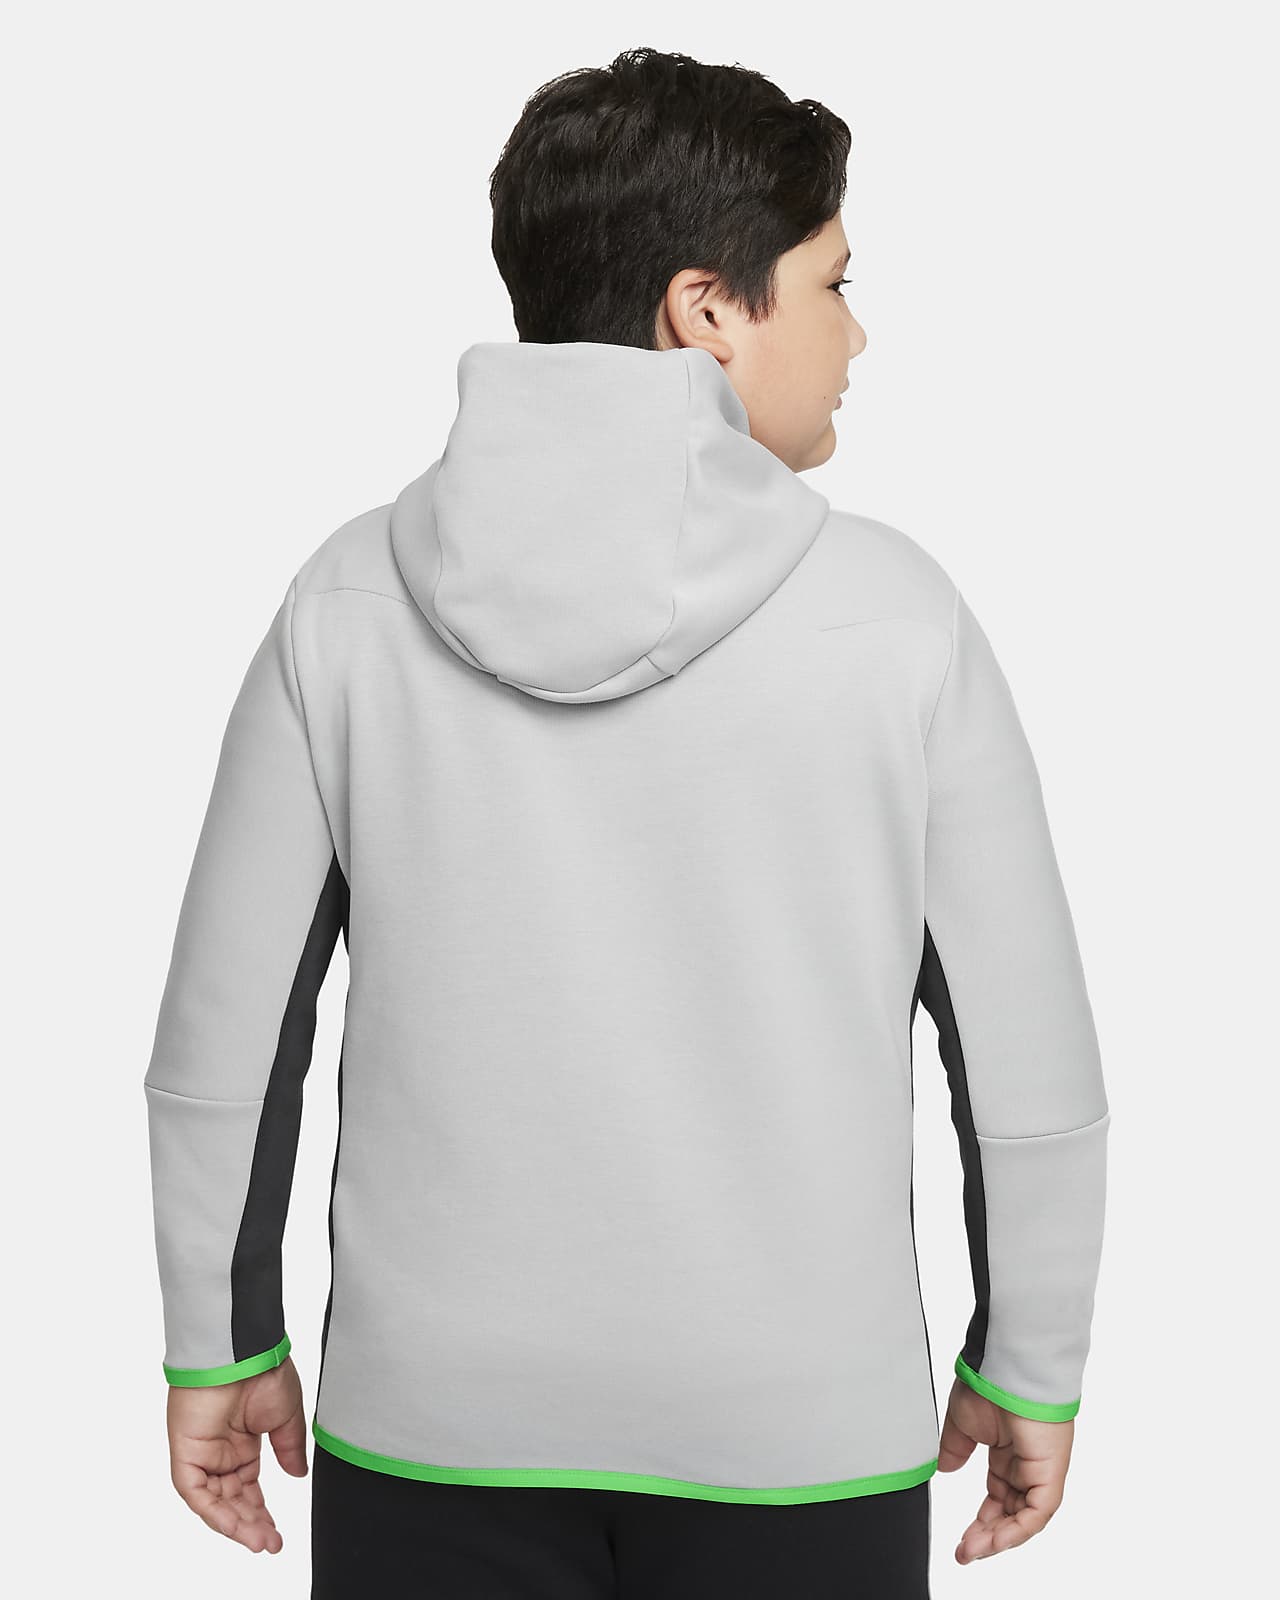 Nike Sportswear Club Fleece Big Kids' (Boys') Pullover Hoodie (Extended  Size).